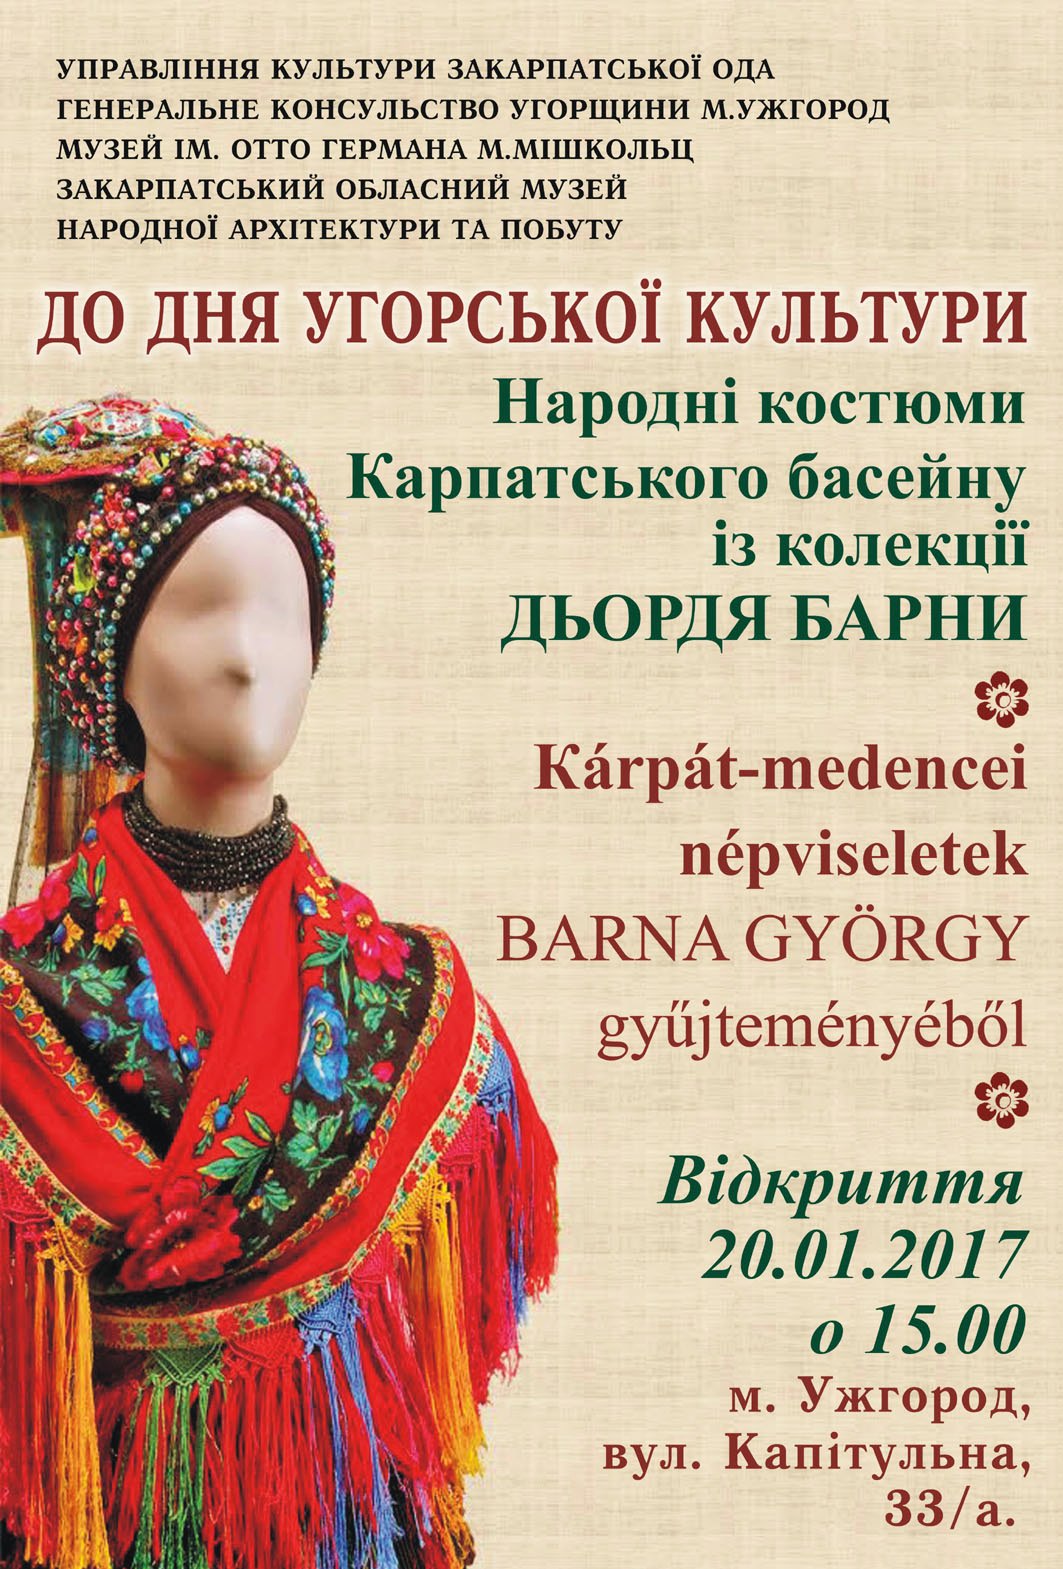 В Ужгороде представят "Народные костюмы Карпатского бассейна" из коллекции Дердя Барны